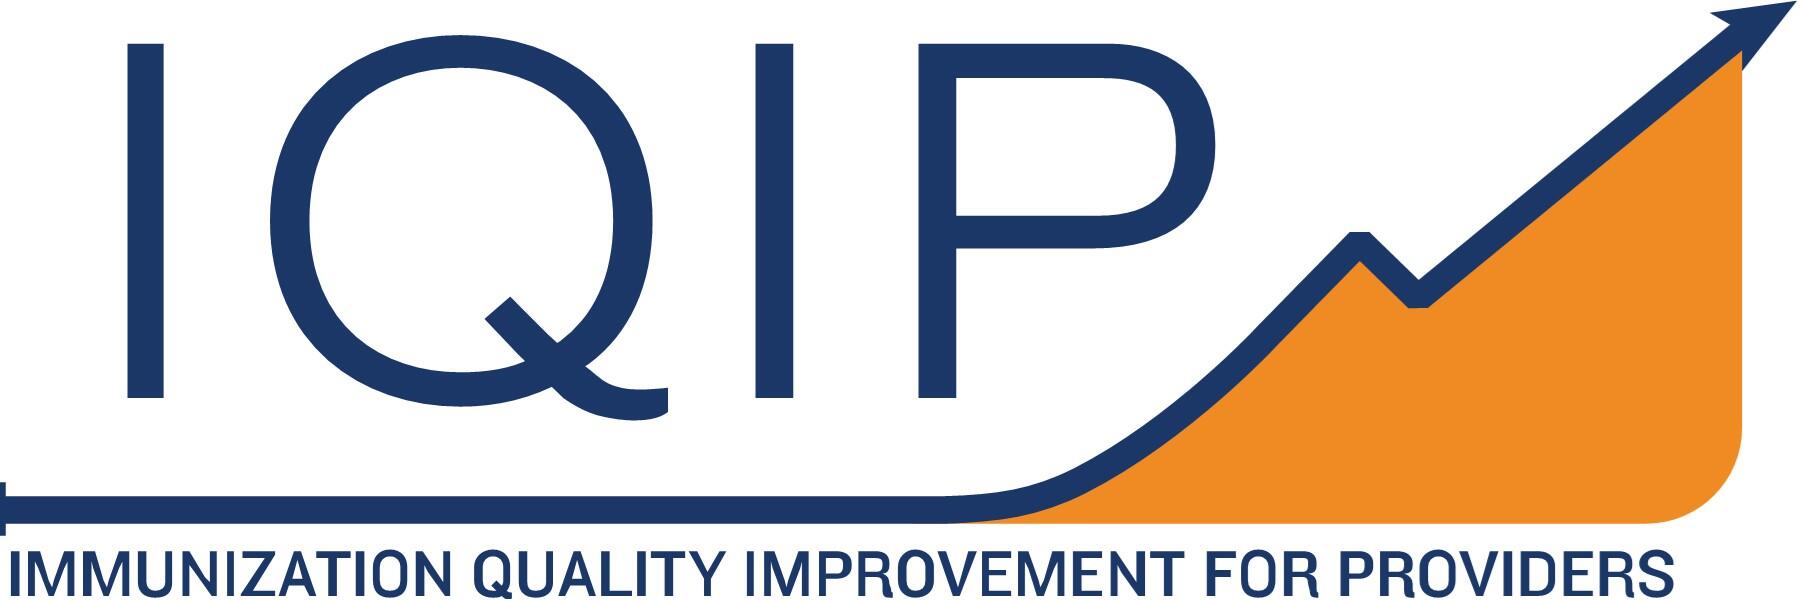 IQIP logo